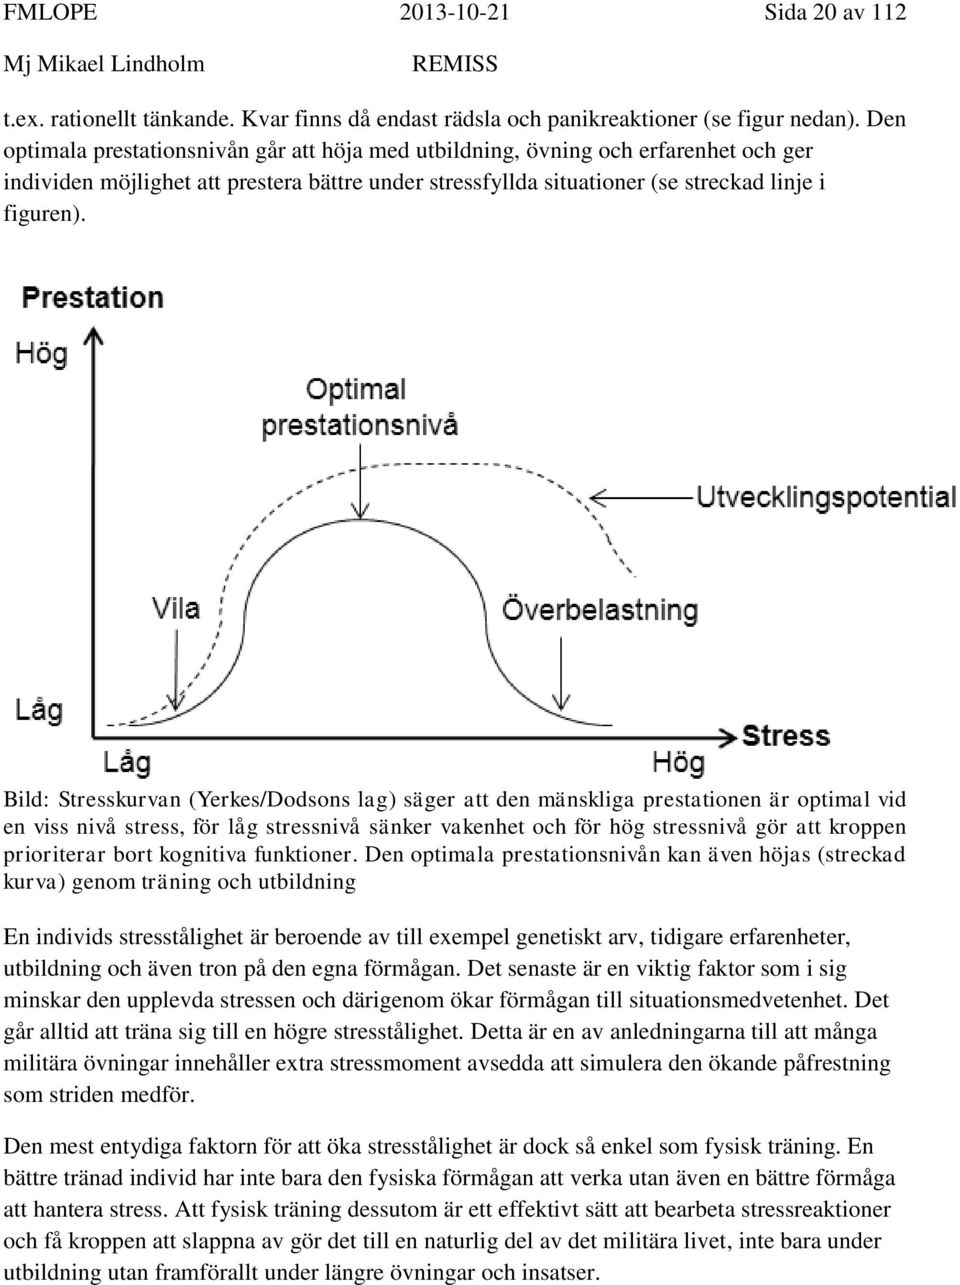 Bild: Stresskurvan (Yerkes/Dodsons lag) säger att den mänskliga prestationen är optimal vid en viss nivå stress, för låg stressnivå sänker vakenhet och för hög stressnivå gör att kroppen prioriterar